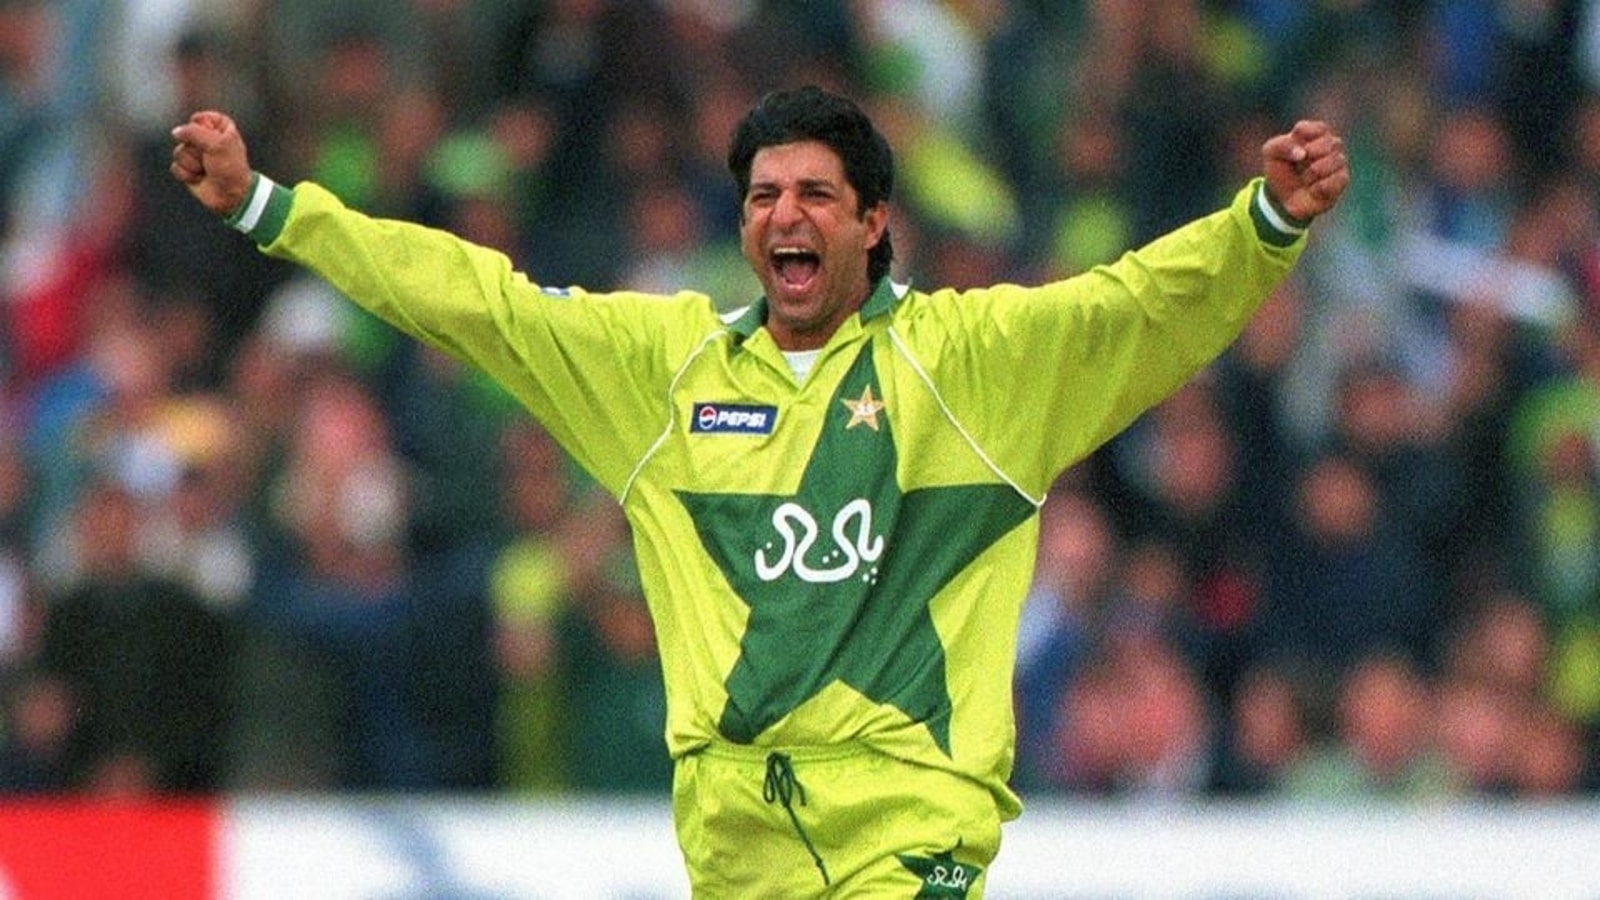 सचिन तेंडुलकर नाही तर 'हा' पाकिस्तानी खेळाडू आहे क्रिकेटचा देव.. अभिनेता संजय दत्तने केले अनोखे वक्तव्य, सोशल मिडीयावर व्हिडीओ होतोय तुफान व्हायरल.. 